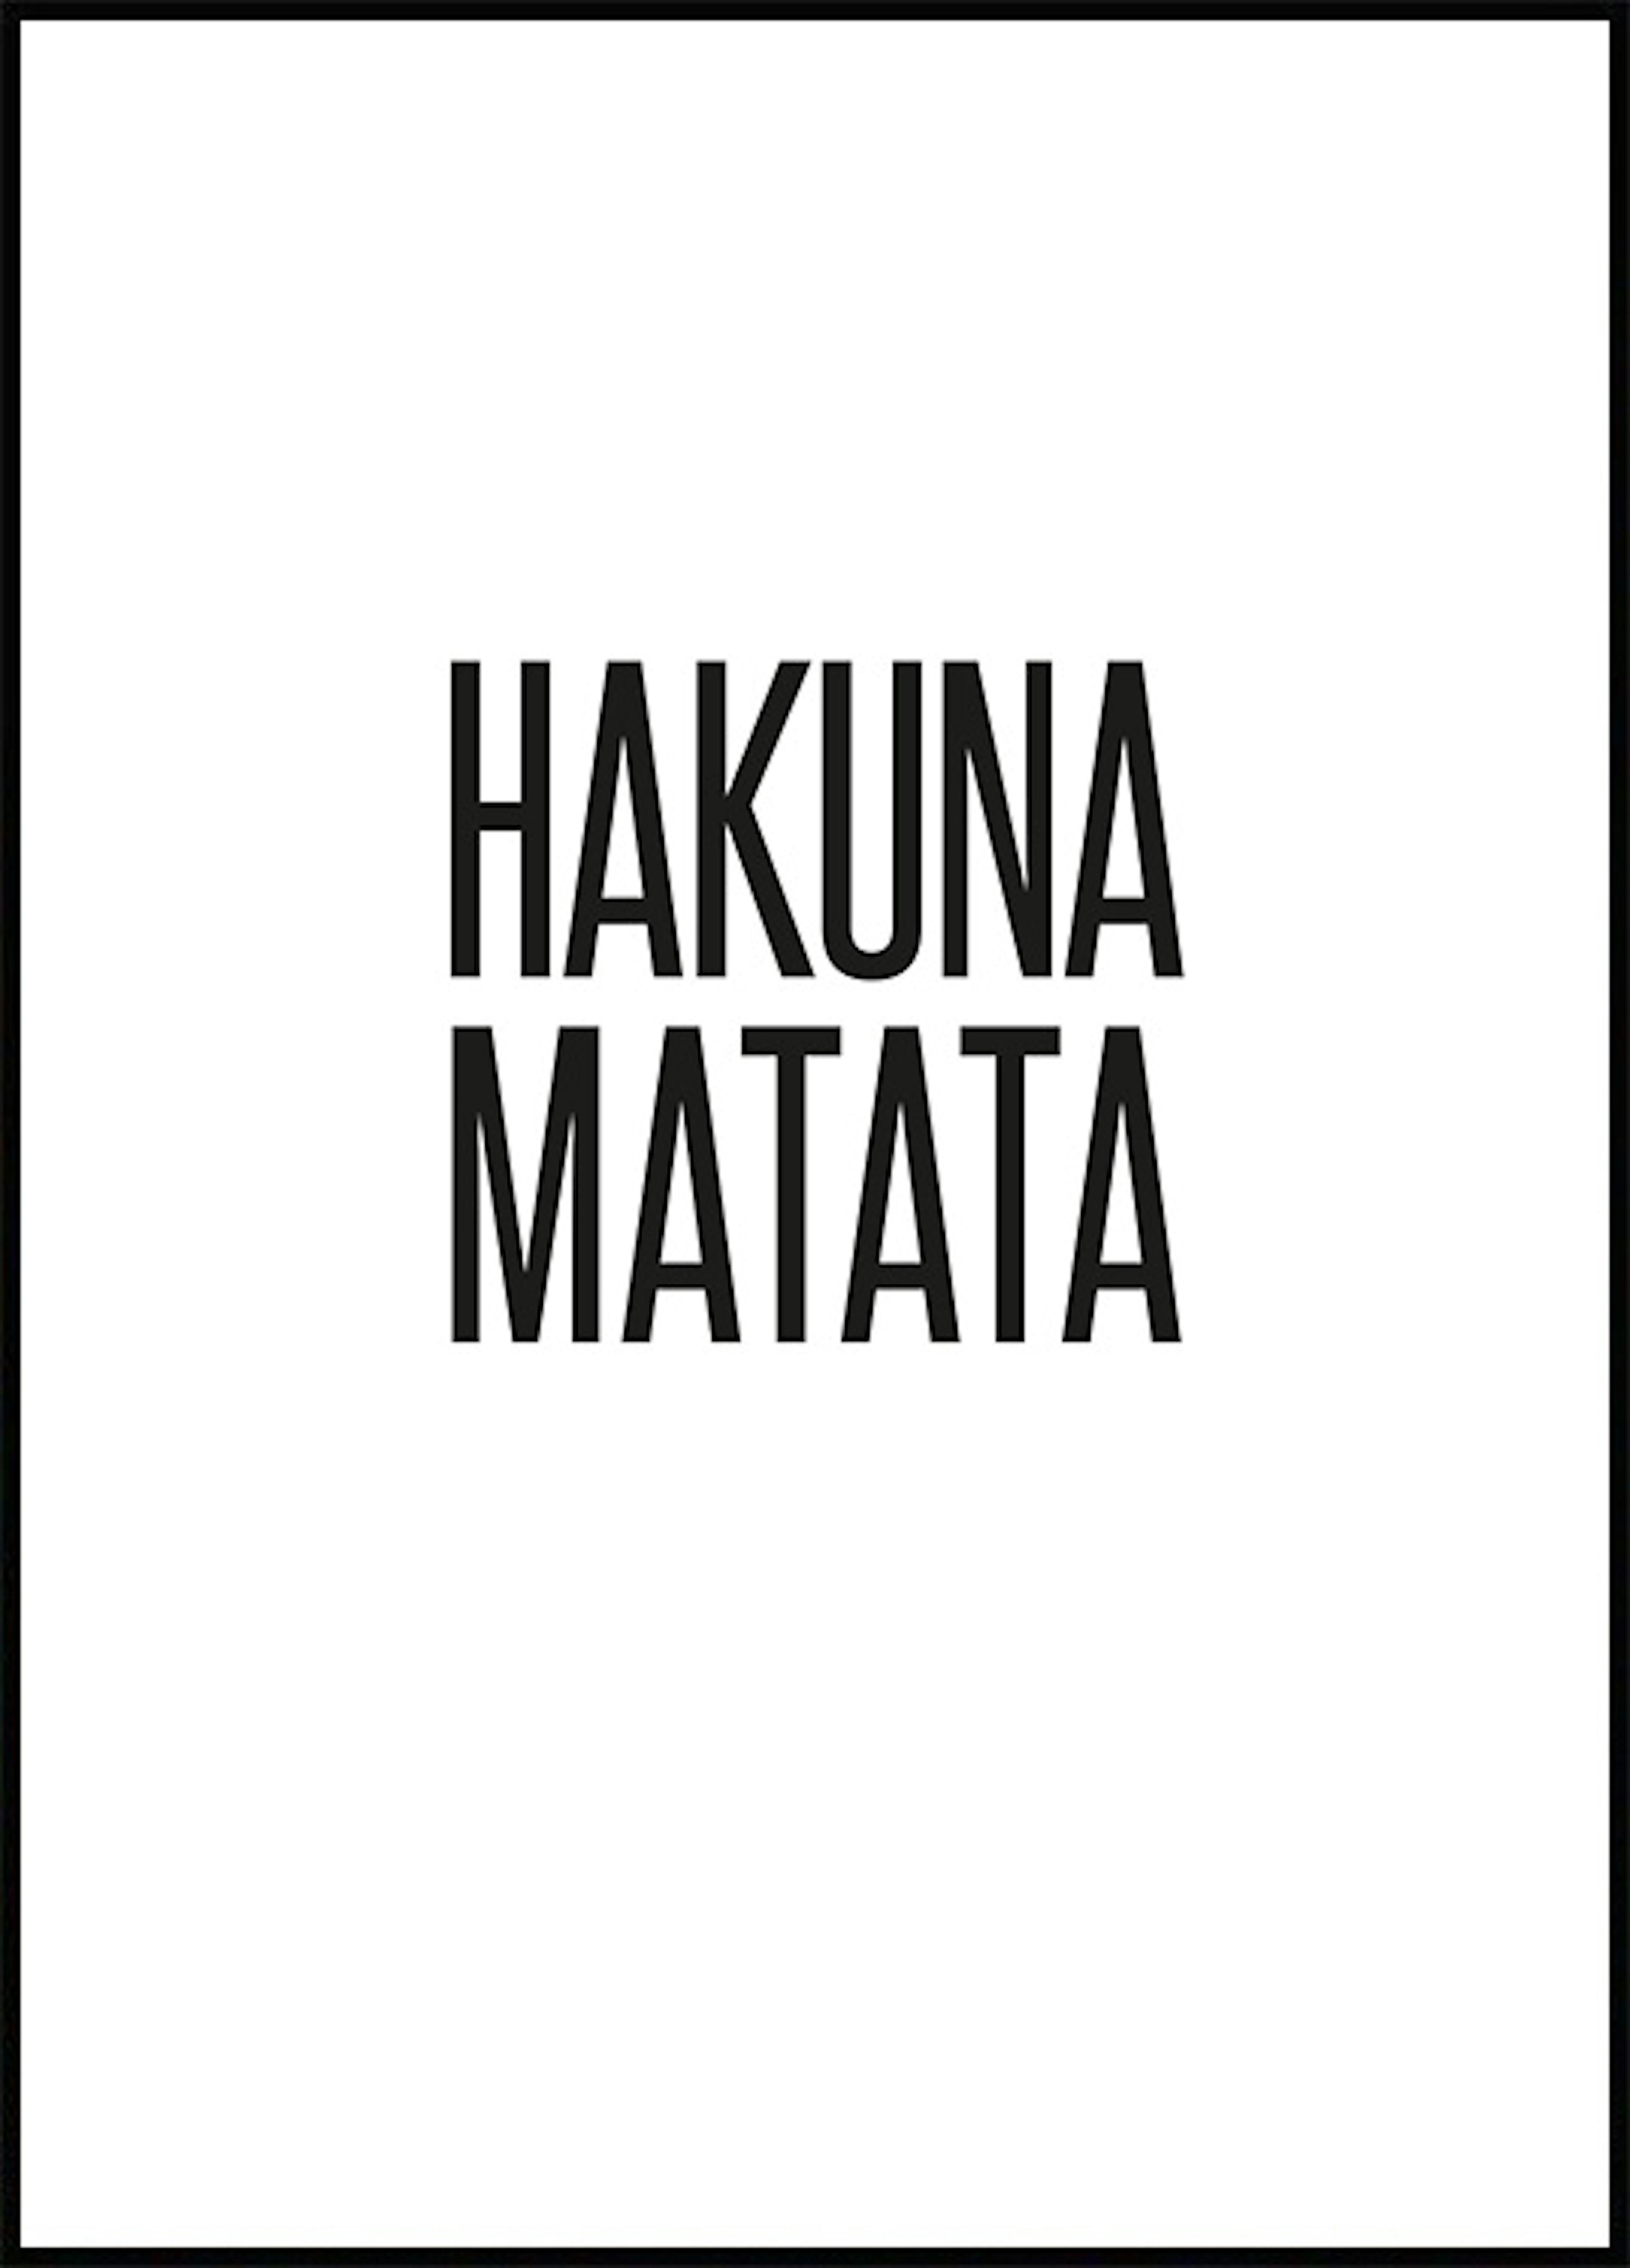 ハクナマタタ ポスター 0